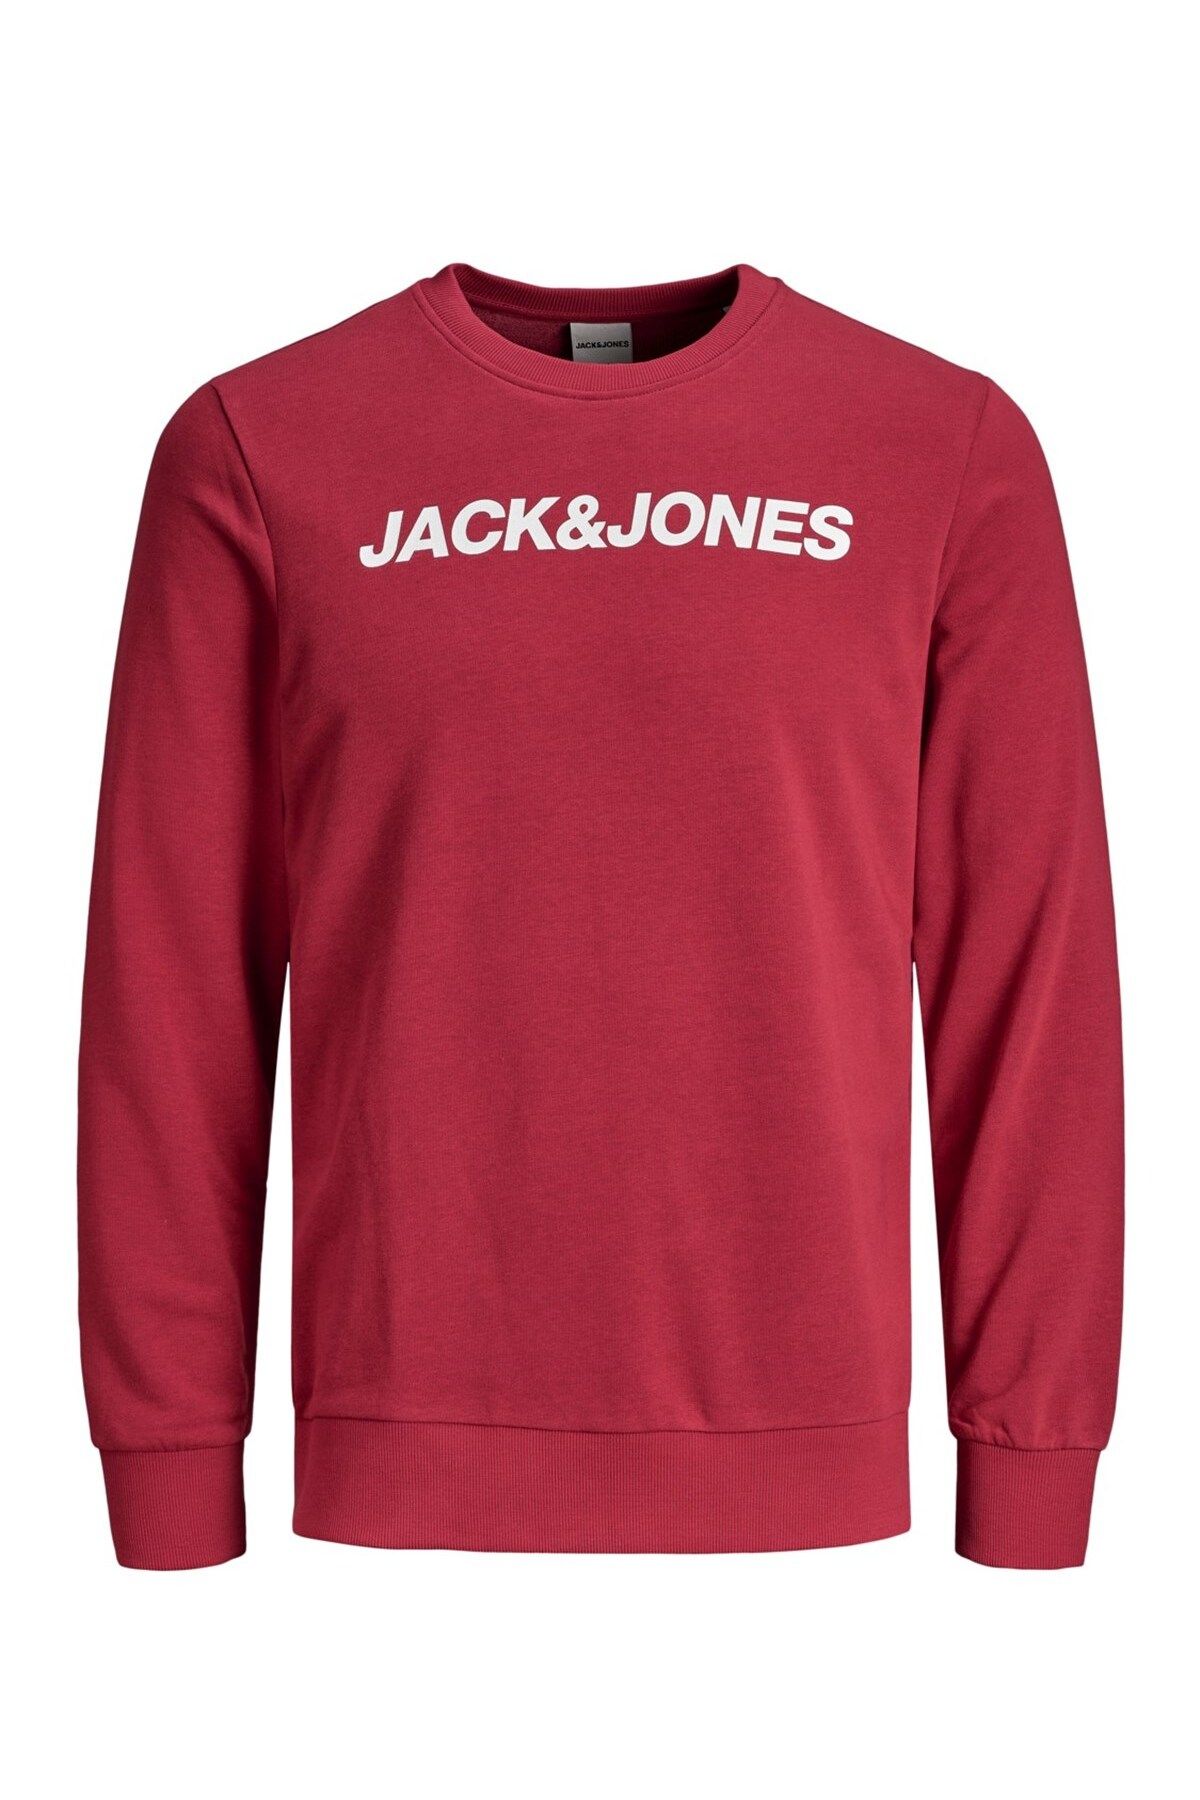 Jack & Jones Jack&jones Jcovibe Crew Neck Erkek Sweatshirt - 12172954